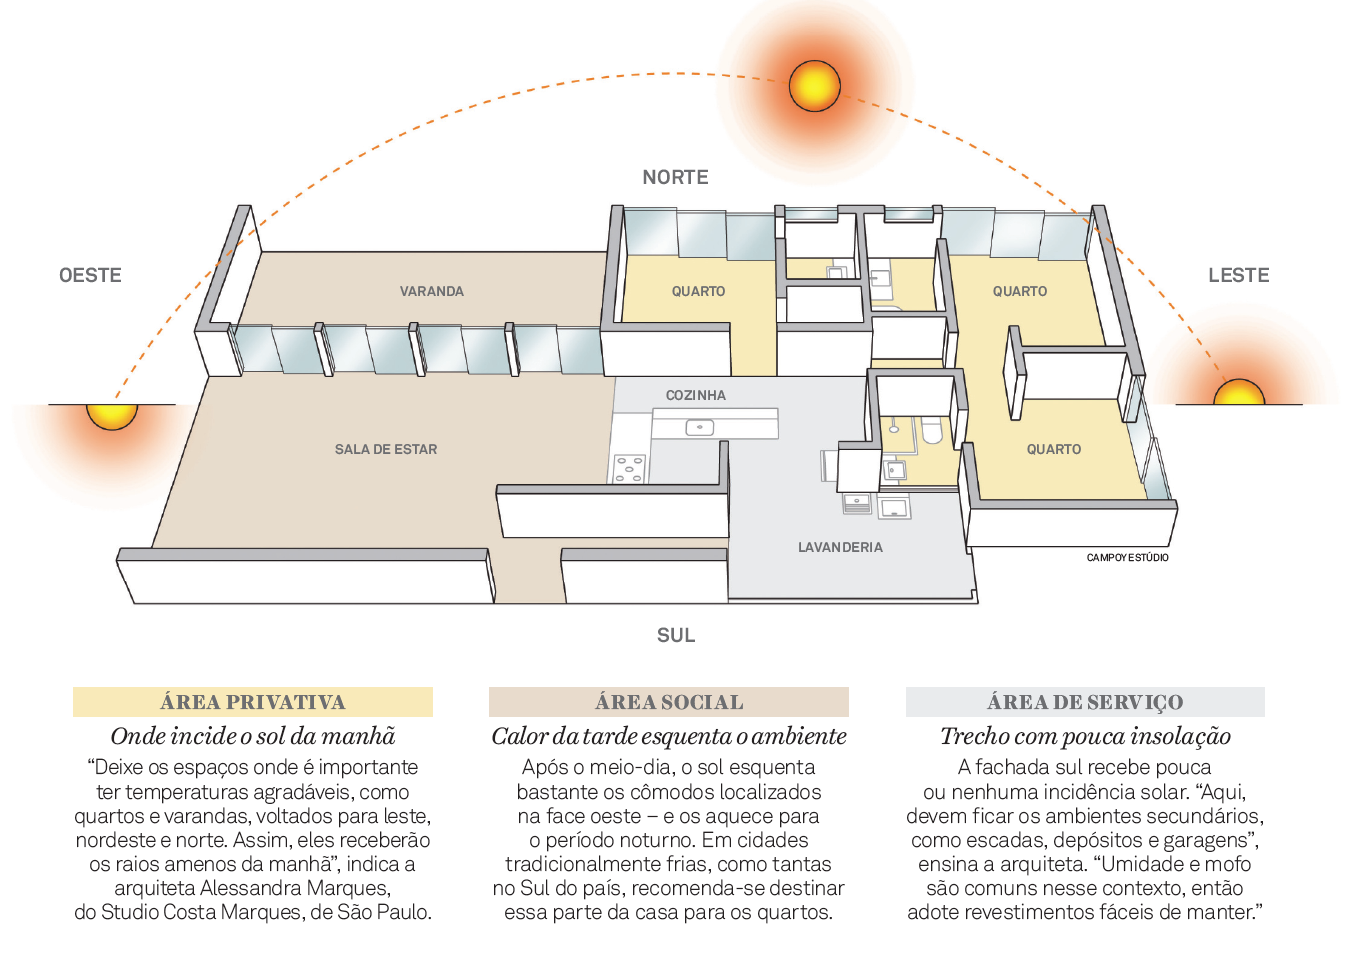  Com distribuir els espais interns en relació al Sol?